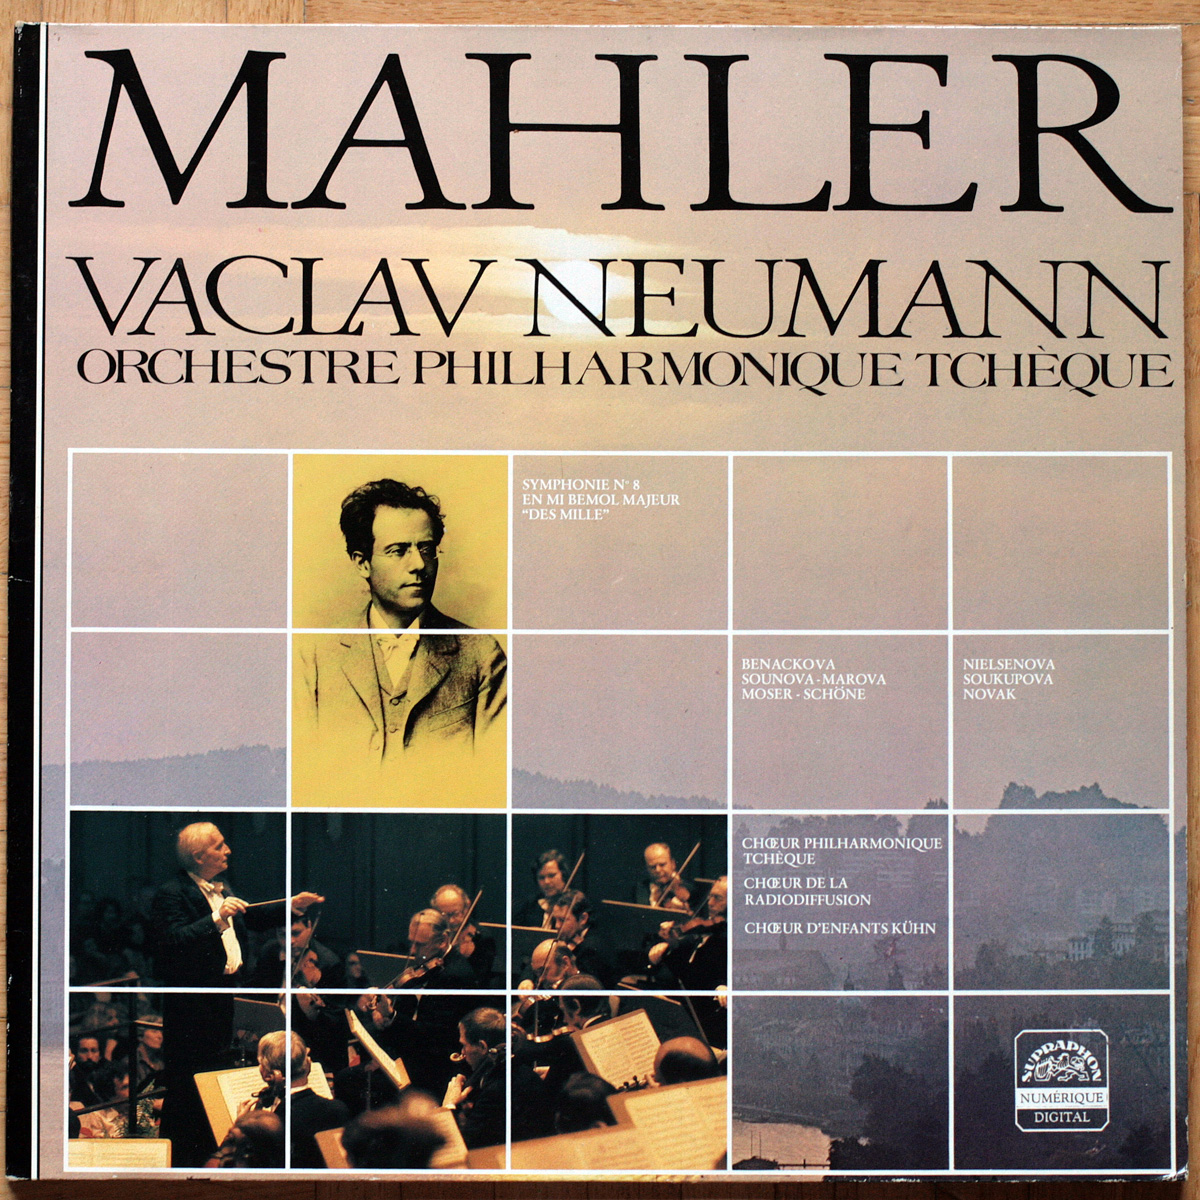 Mahler • Symphonie n° 8 "Symphonie der Tausend" – "Symphonie des Mille" • Supraphon 302 100 • Orchestre Philharmonique Tchèque • Václav Neumann